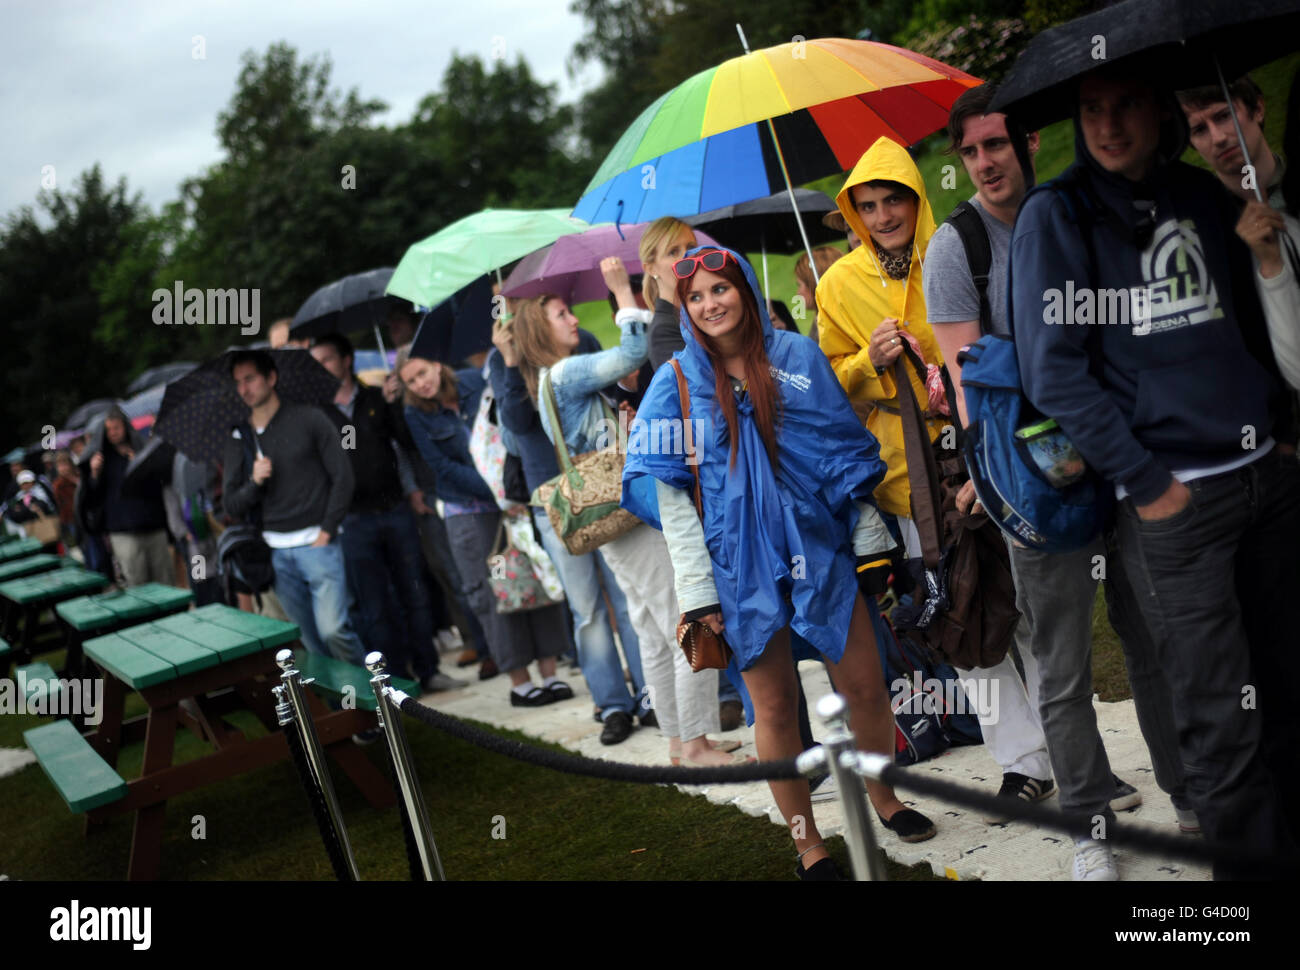 Tennisspieler schützen sich vor Regen, während sie am fünften Tag der Wimbledon Championships 2011 im All England Lawn Tennis Club, Wimbledon, Schlange stehen, um Tickets zu verkaufen. Stockfoto